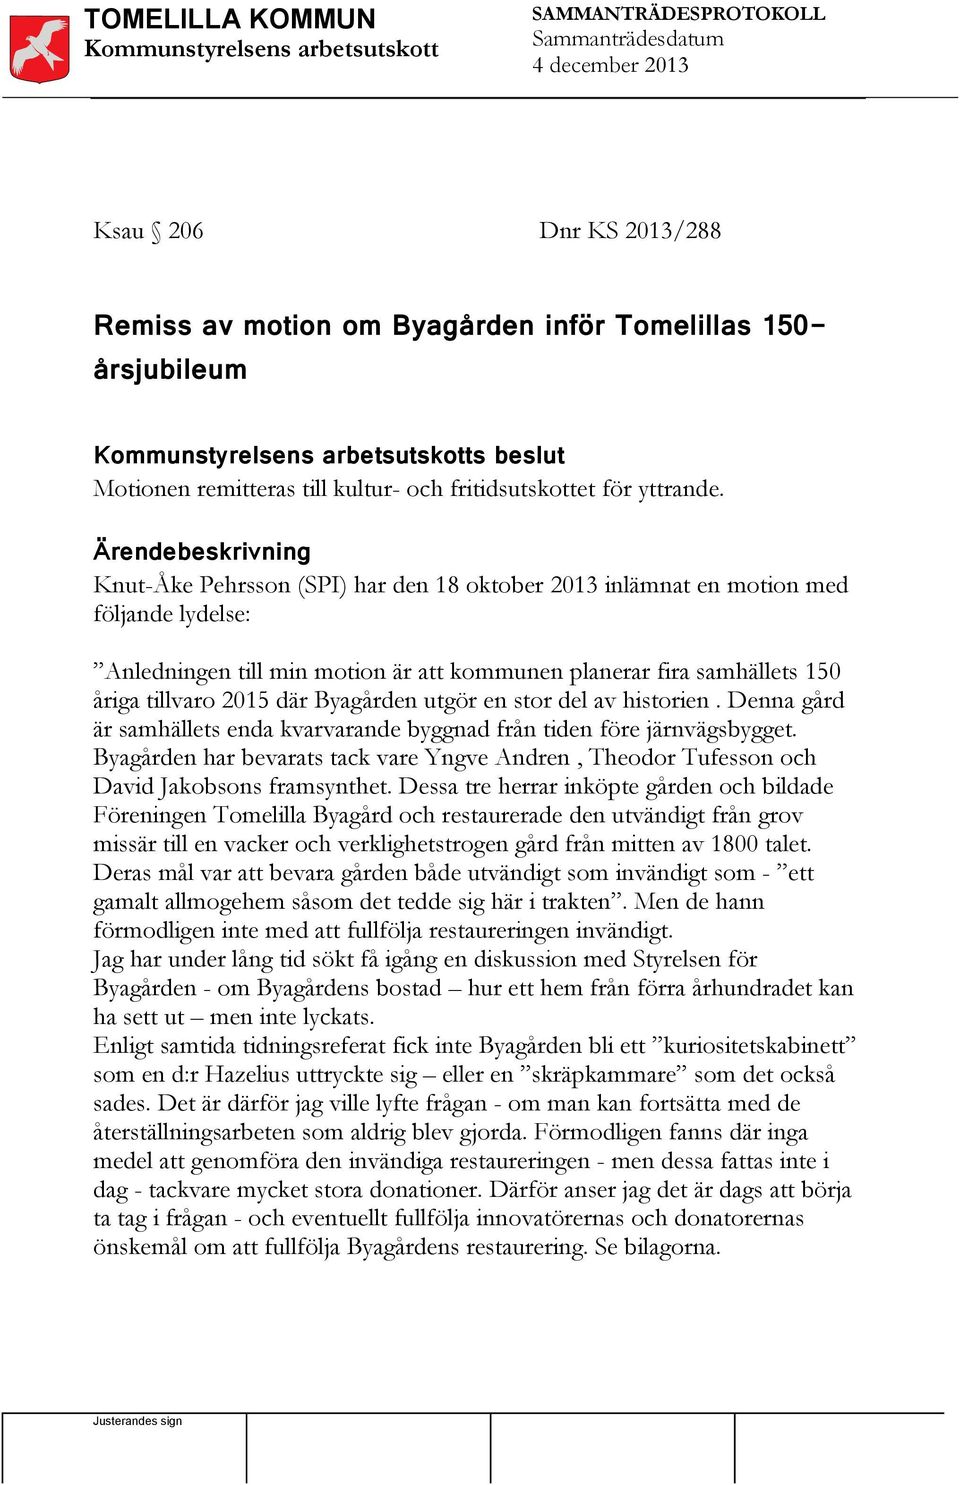 Ärendebeskrivning Knut-Åke Pehrsson (SPI) har den 18 oktober 2013 inlämnat en motion med följande lydelse: Anledningen till min motion är att kommunen planerar fira samhällets 150 åriga tillvaro 2015